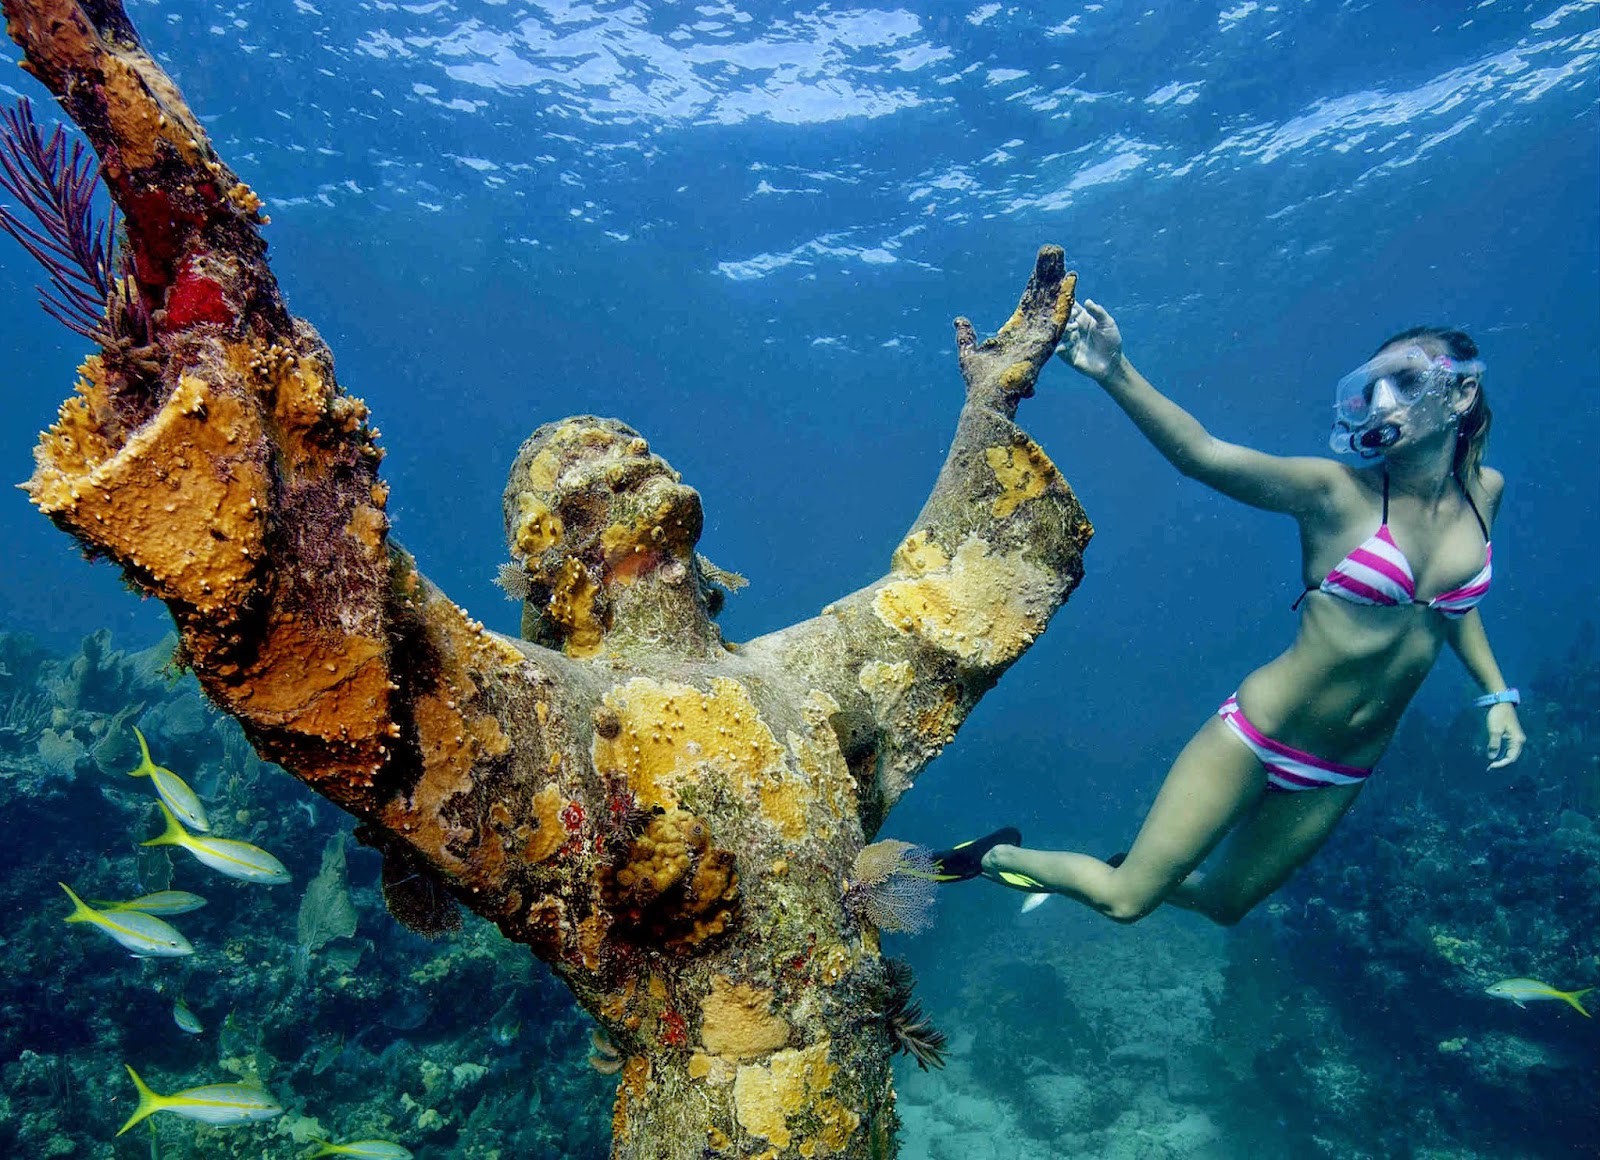 А это — одна из нескольких копий статуи, расположенная в районе подводного кораллового рифа Dry Rocks, Флорида, США. Моря и океаны, интересное, подводный мир